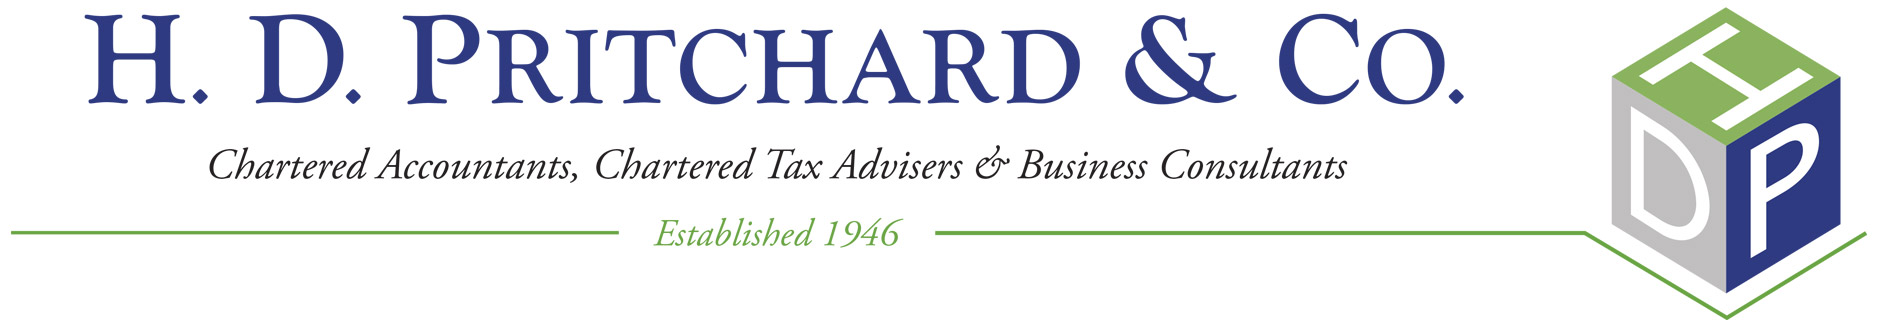 H D Pritchard & Co logo